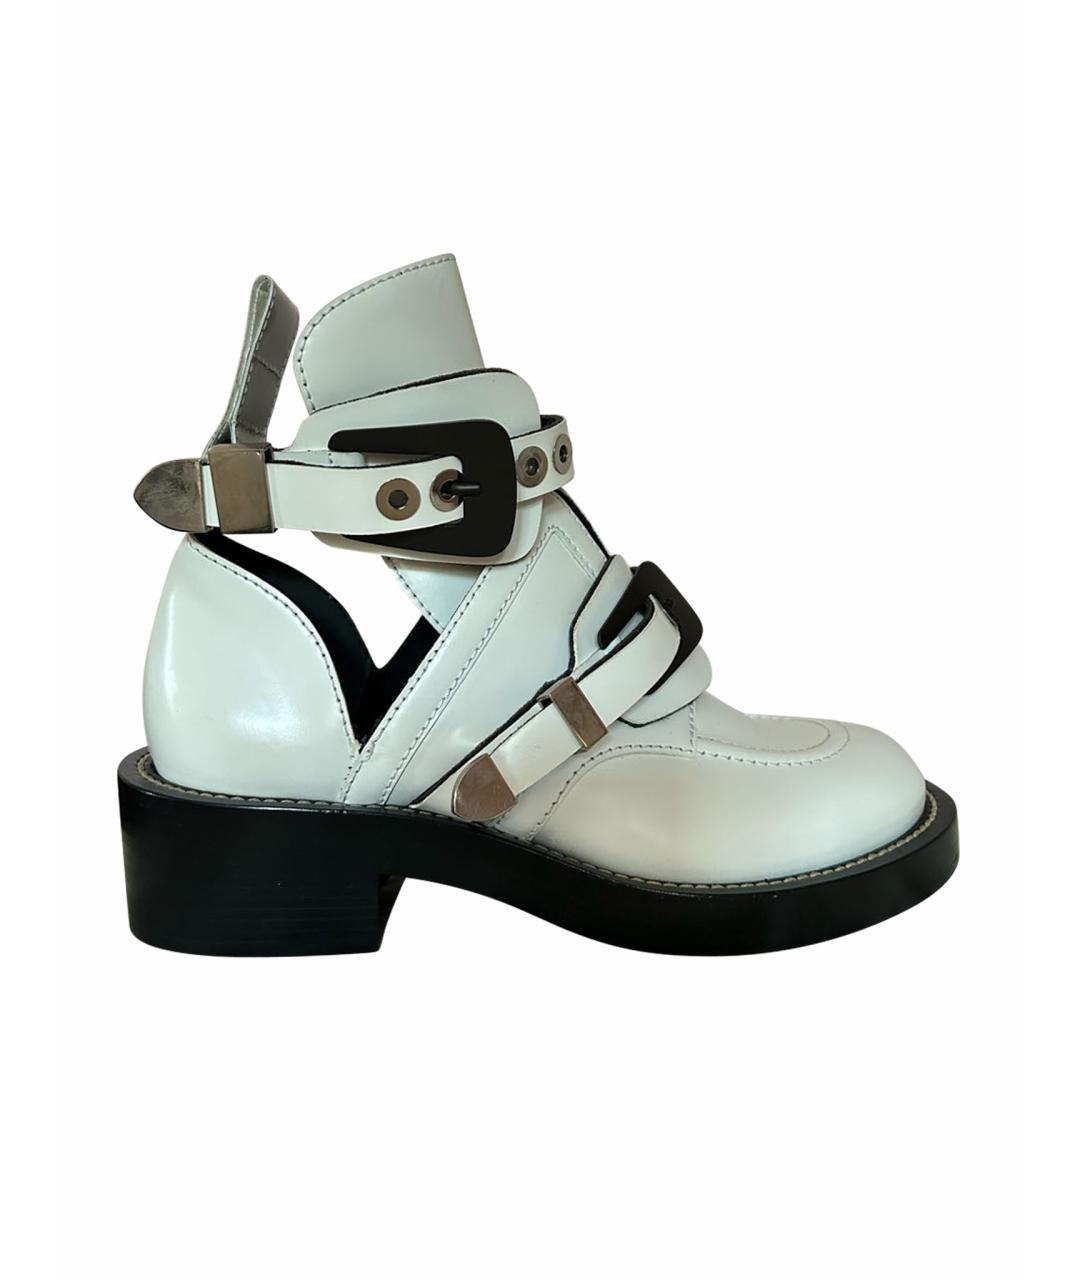 BALENCIAGA Белые кожаные ботинки, фото 1